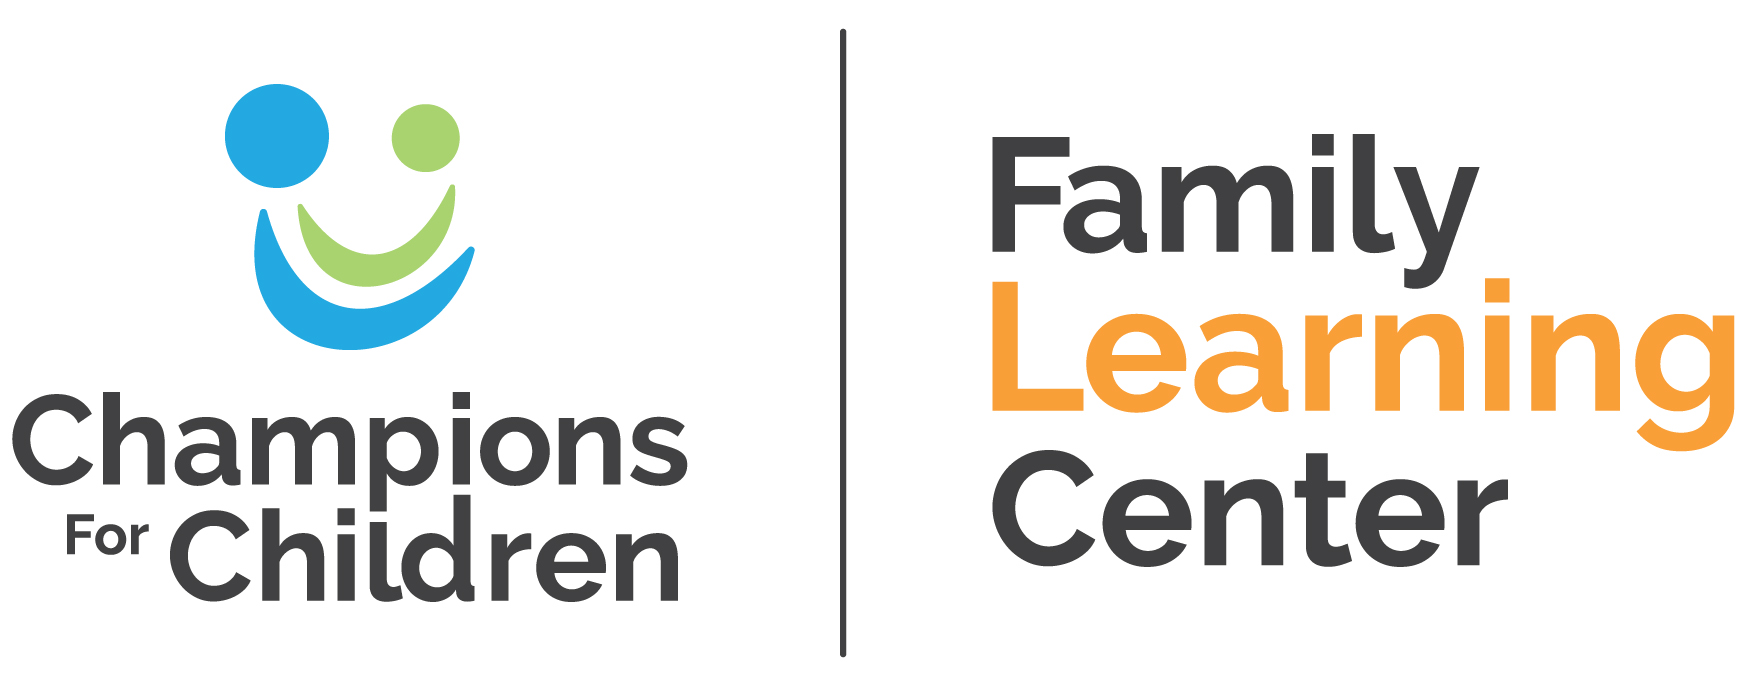 Champions for Children Family Learning Center logo